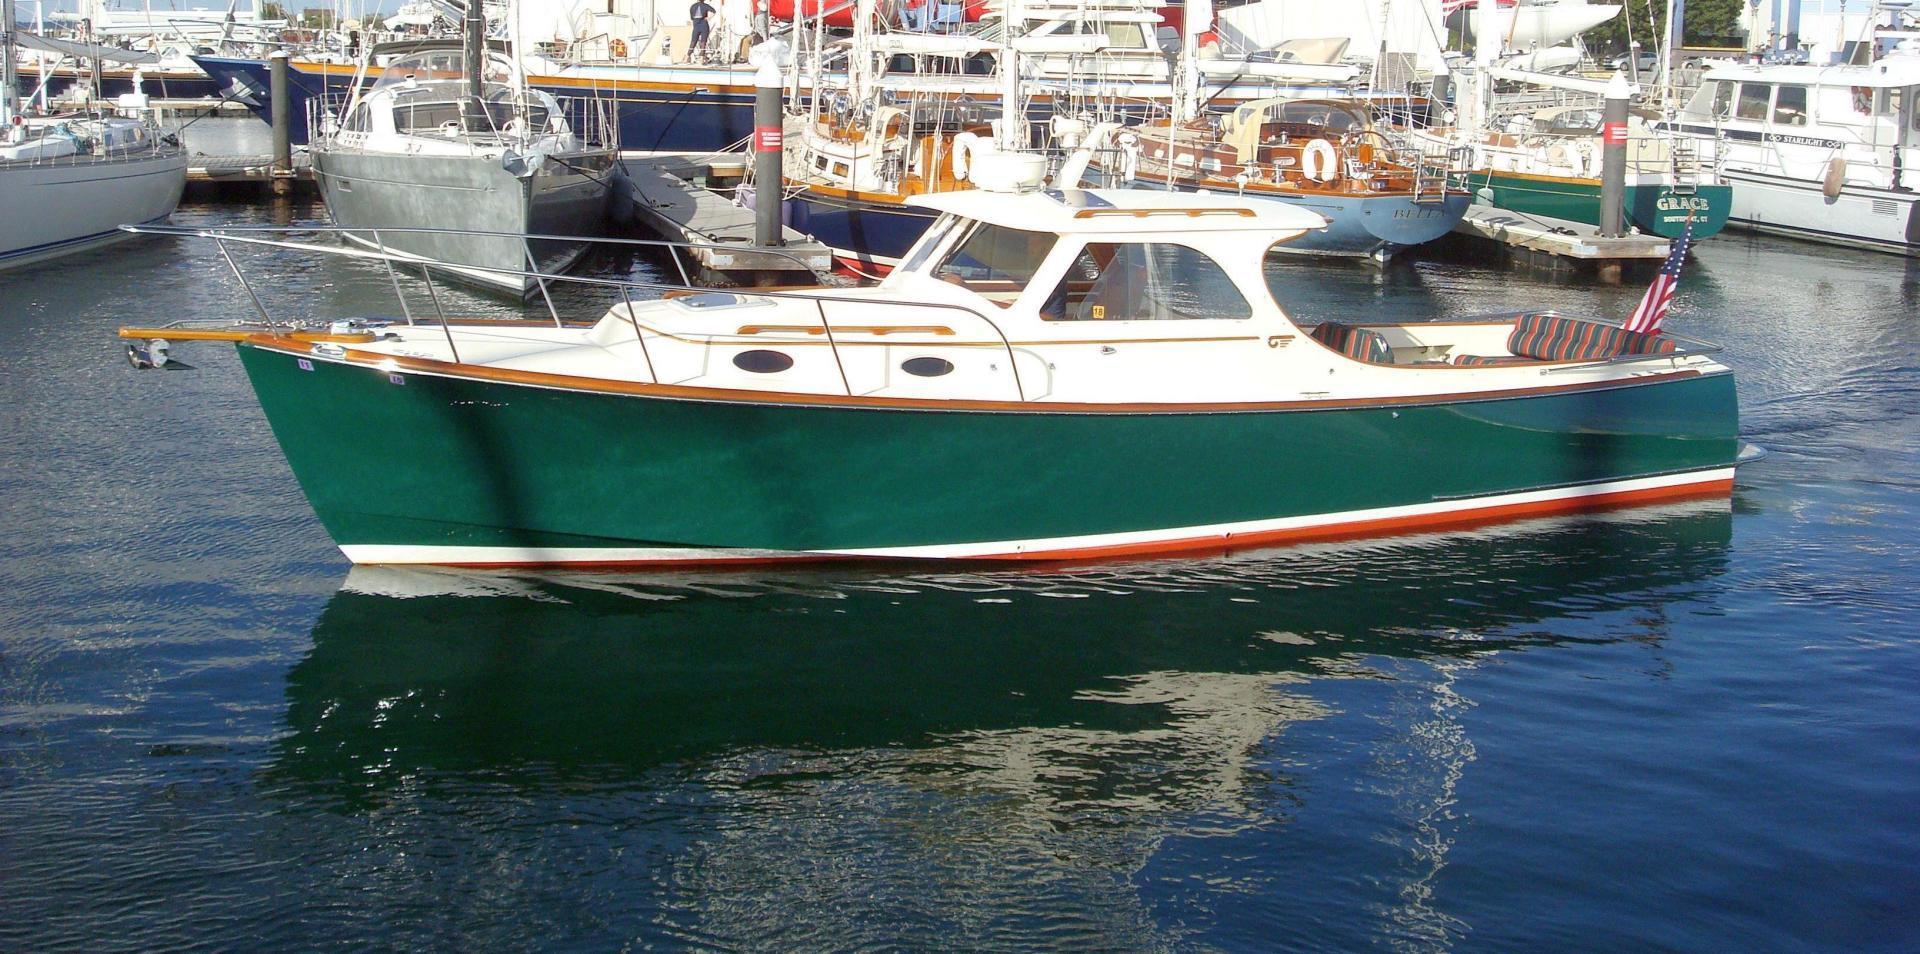 36' Hinckley 36 Classic Picnic Boat